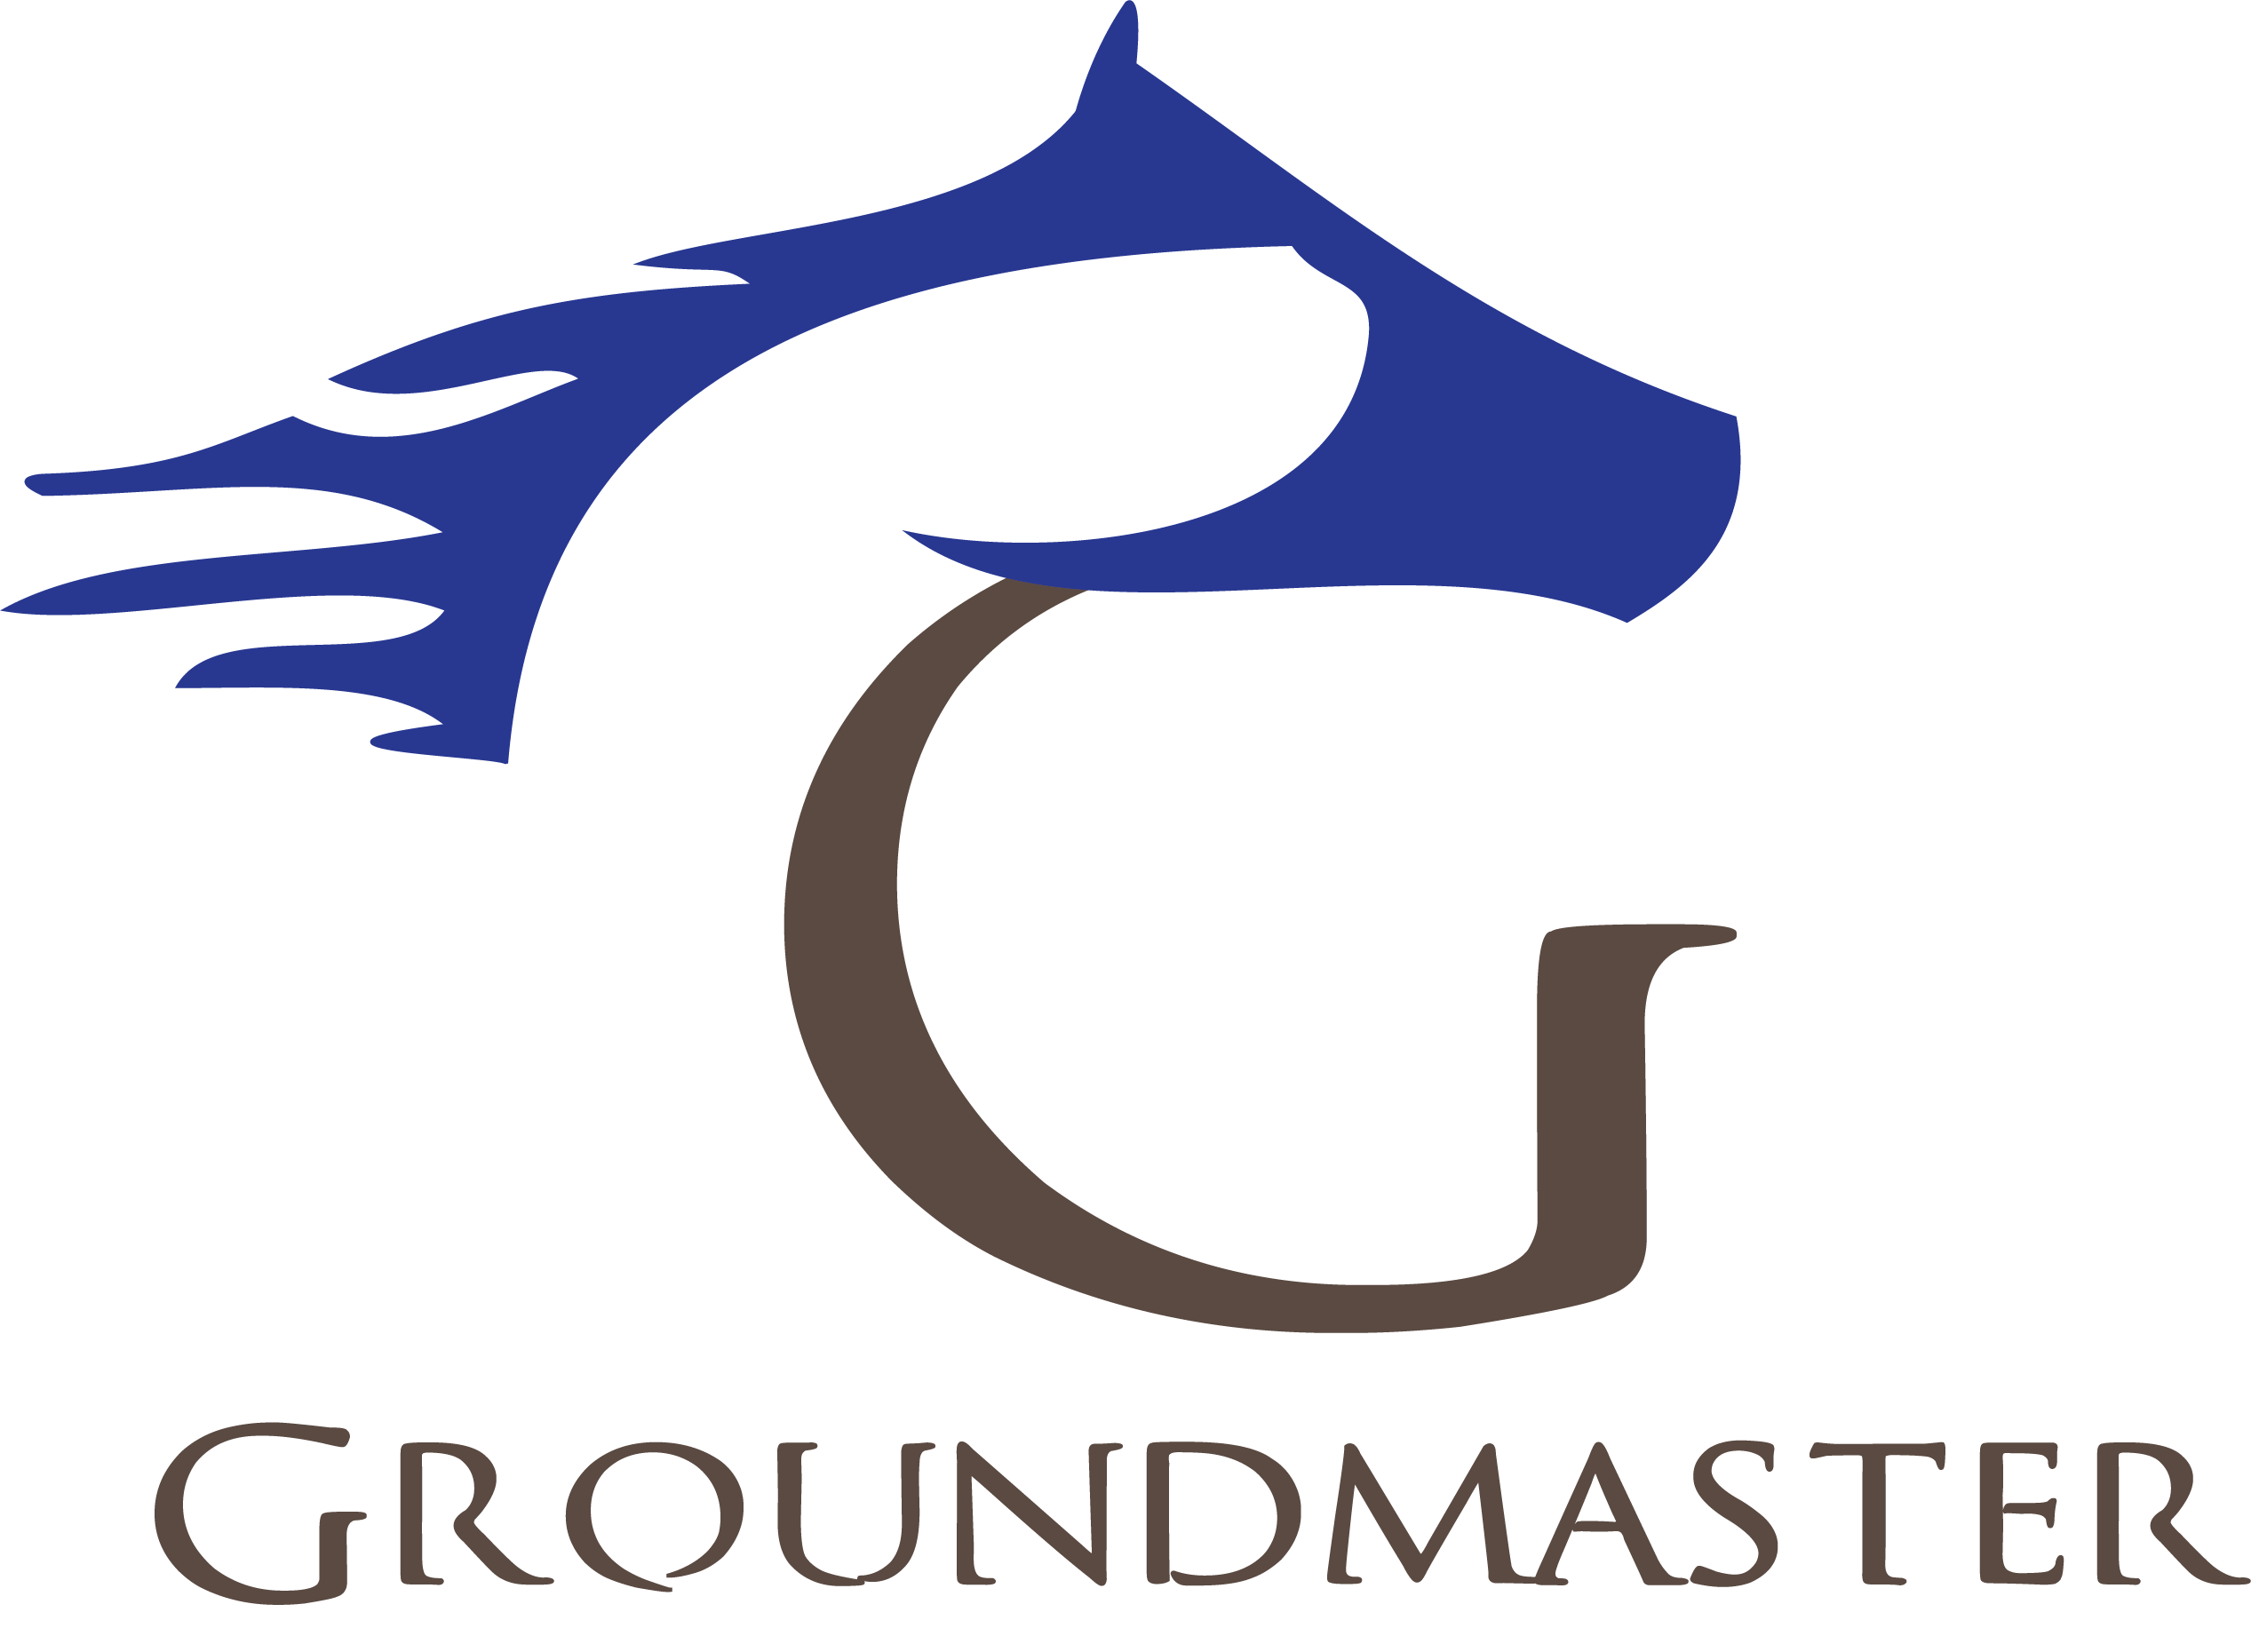 Groundmaster Stall mat logo